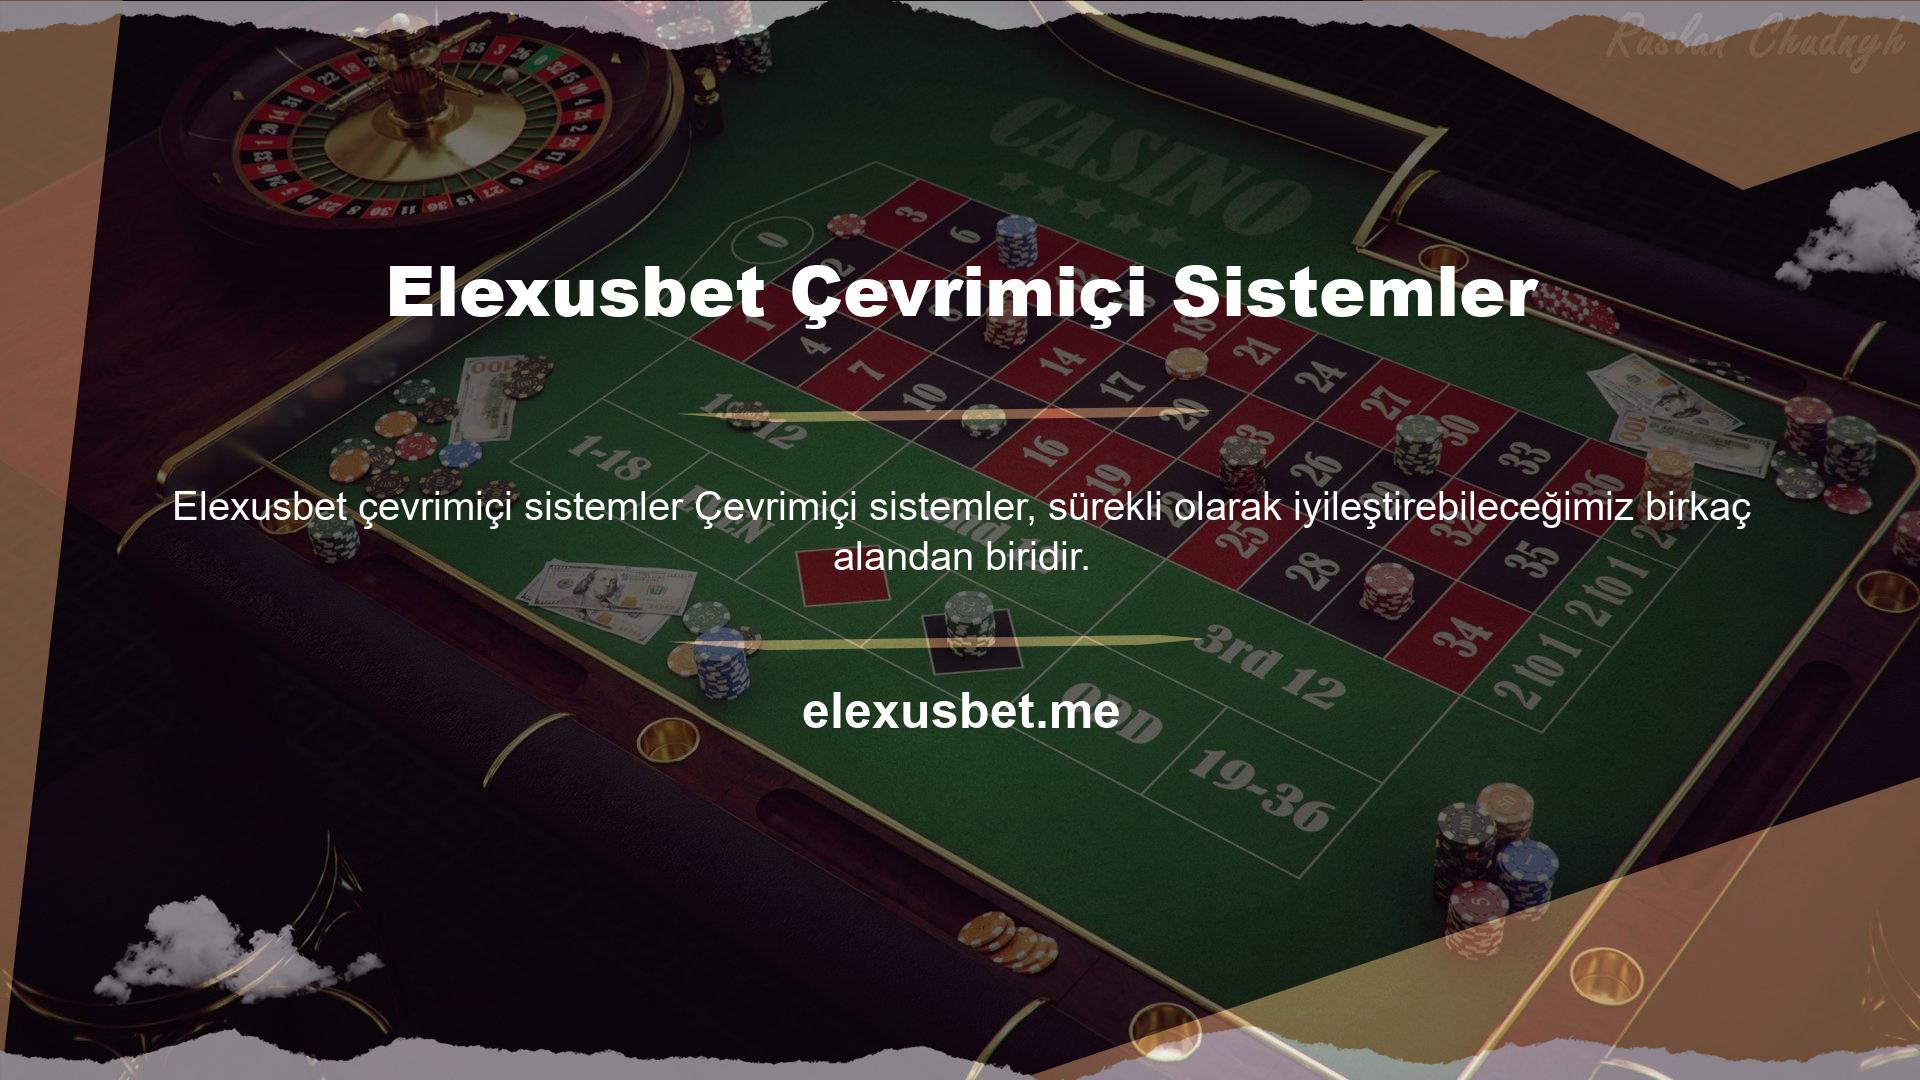 Elexusbet oyun sitesi canlı müşteri destek hattı üzerinden de 7/24 canlı oyuncu desteği sunmaktadır